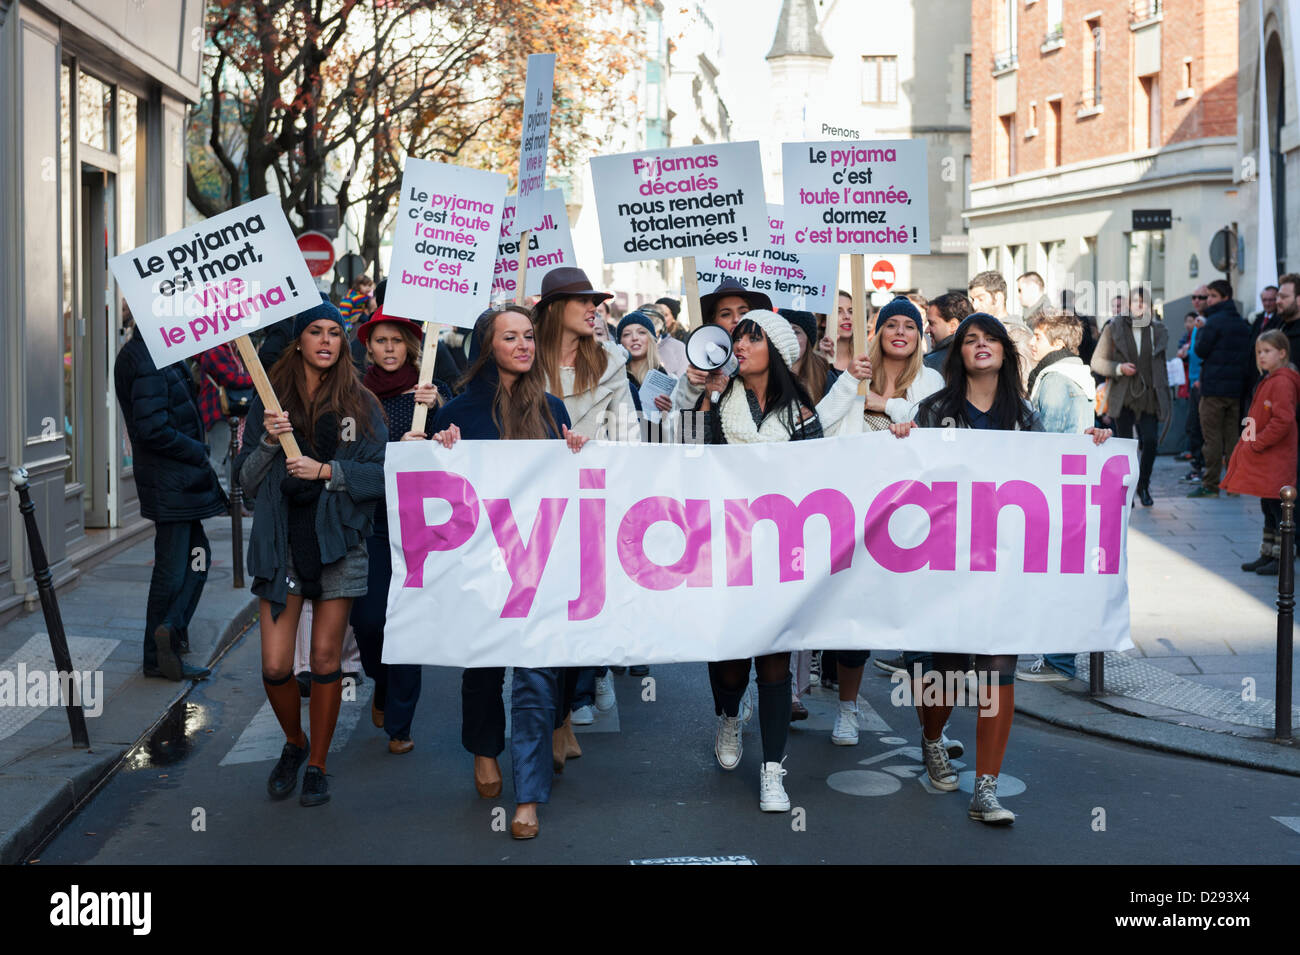 Pyjamanif - PR evento nel Marais (Parigi) per la principessa Tam Tam marca - disegnate come protesta di strada Foto Stock